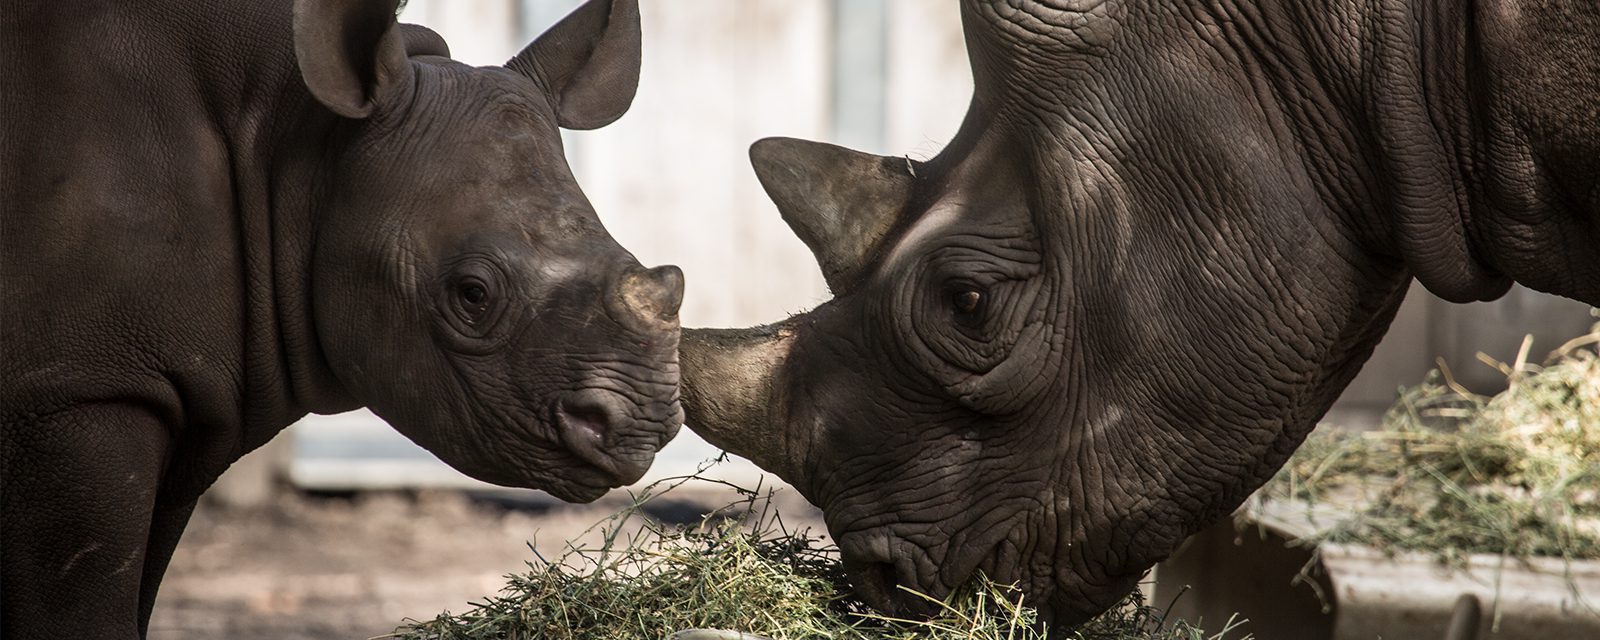 Eastern black rhinoceros in exhibit